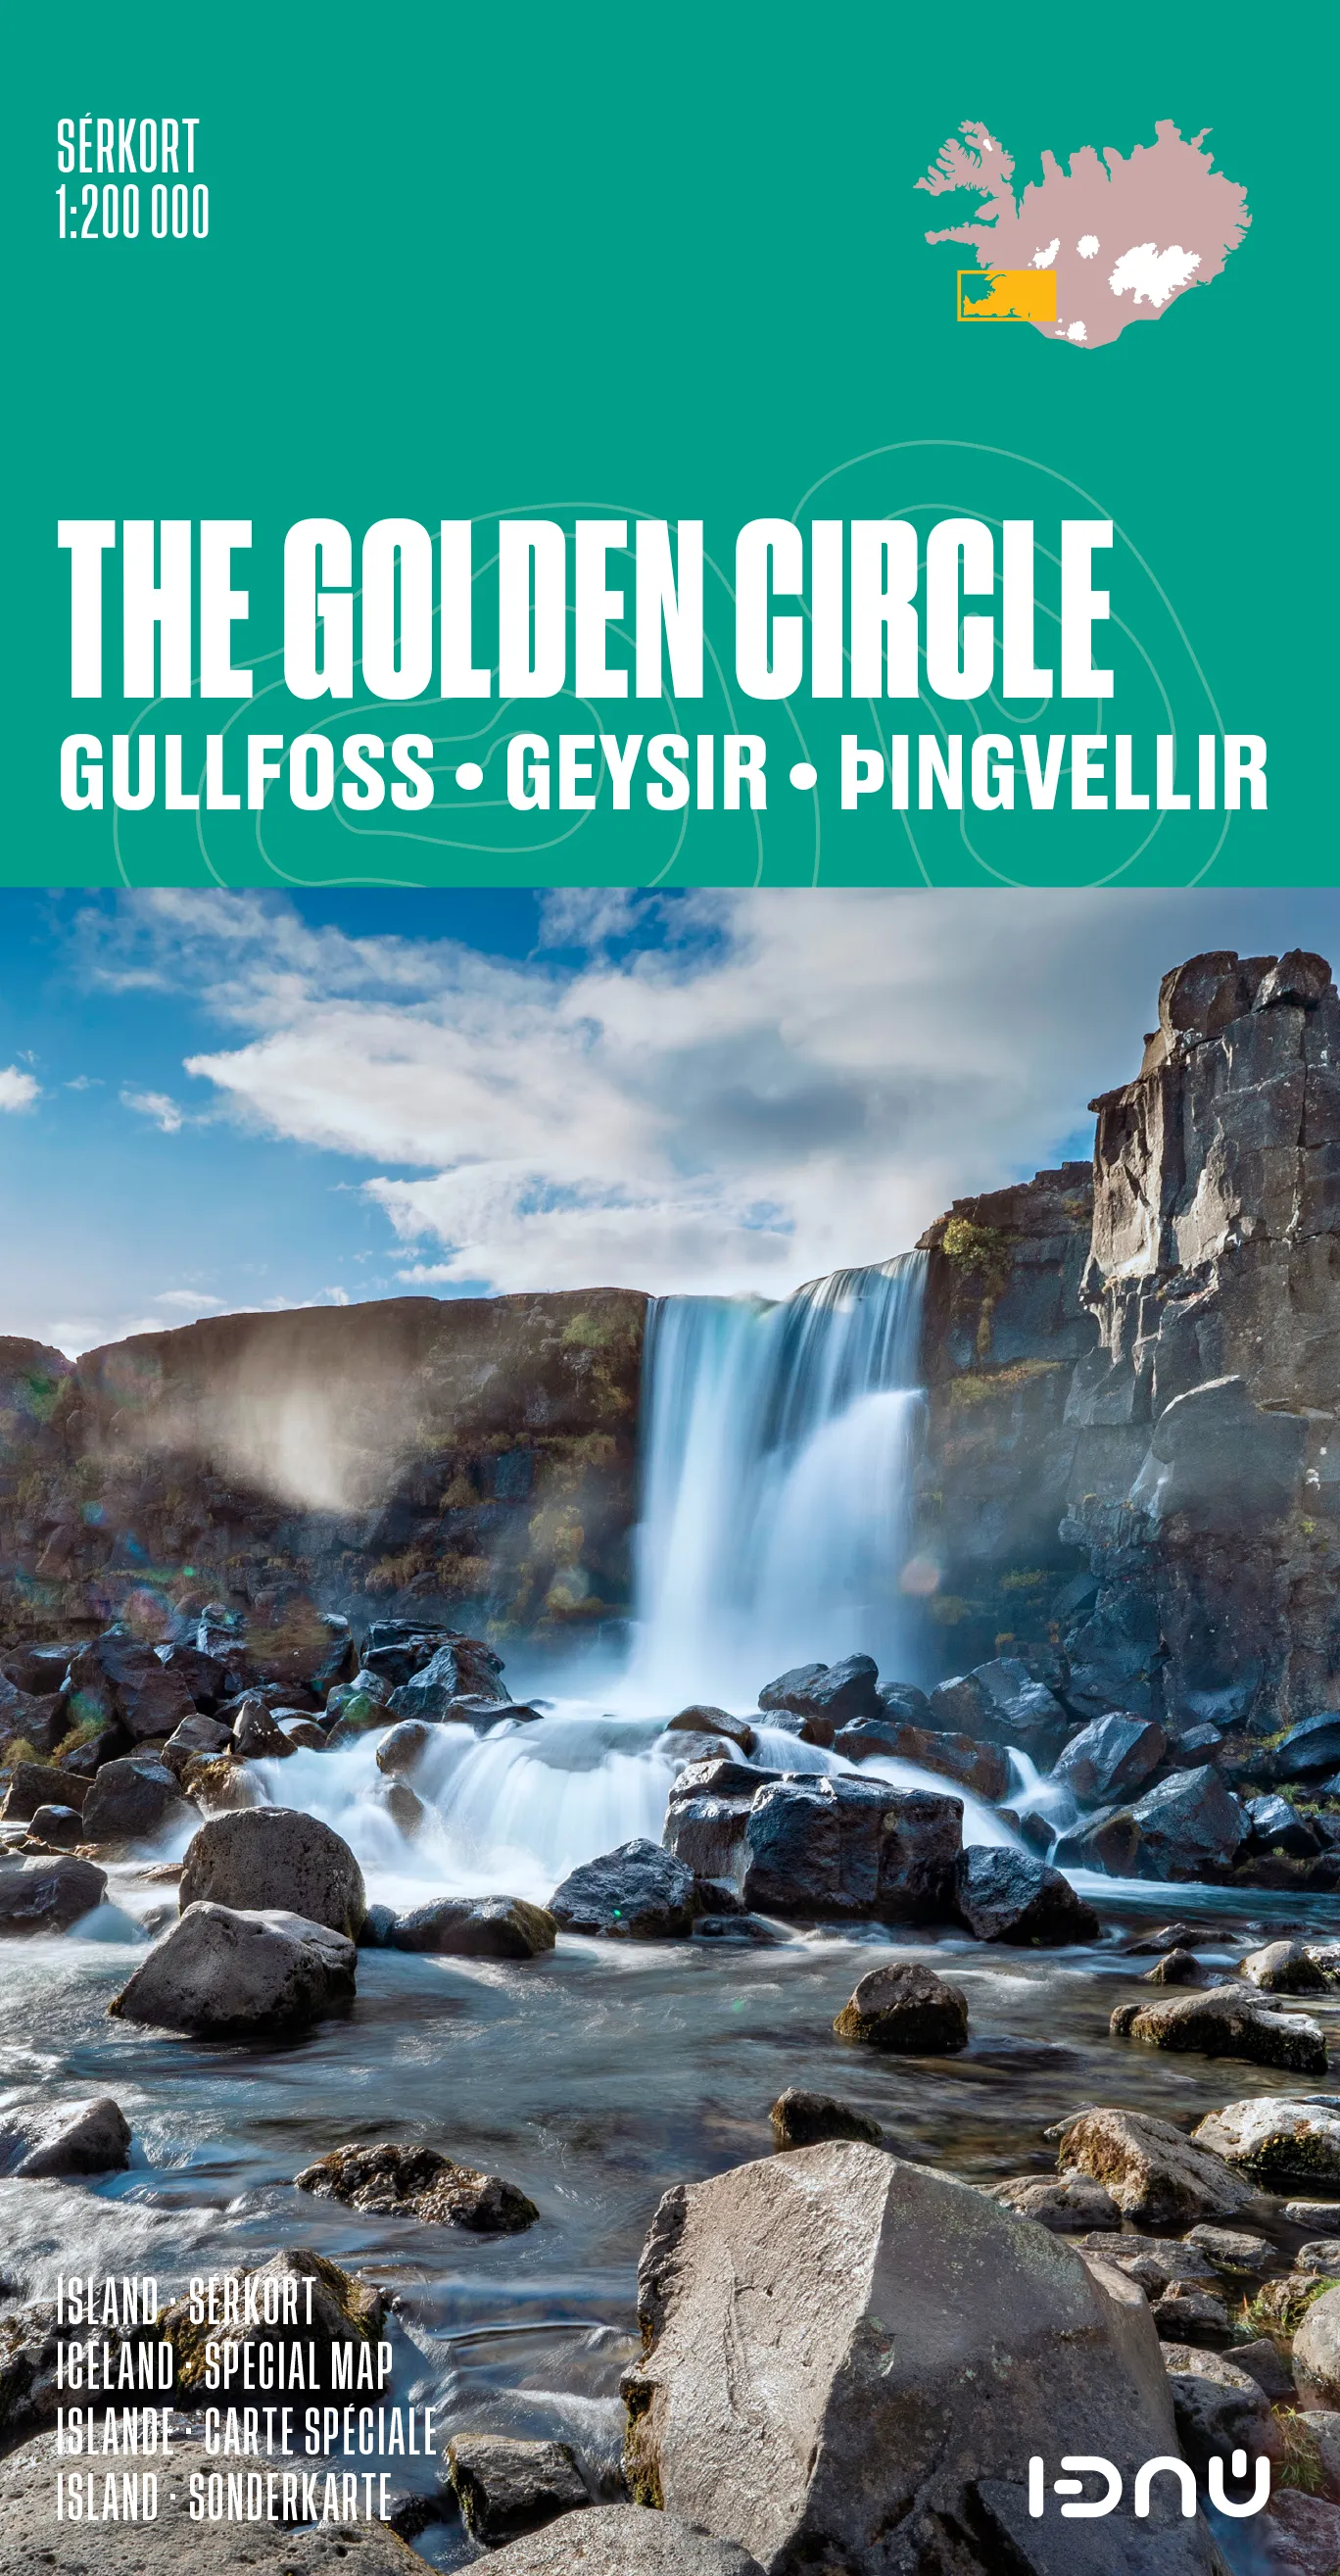 Bókakápa: Sérkort 1:200 000 The Golden Circle Gullfoss - Geysir - Þingvellir